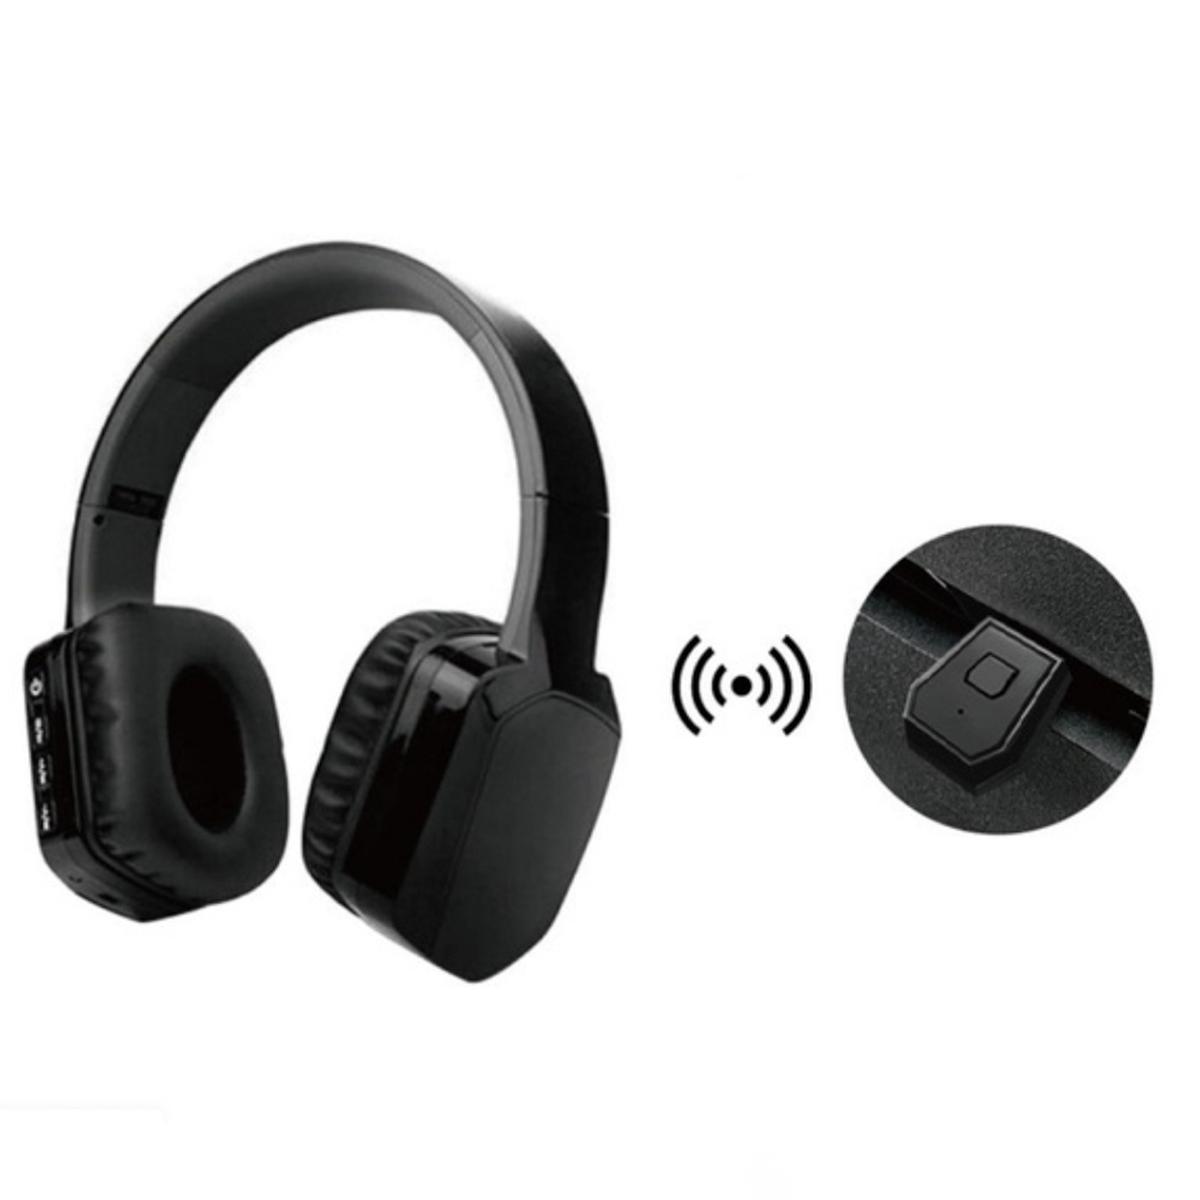 Adaptador USB Bluetooth para auriculares Gaming PS4, Cascos